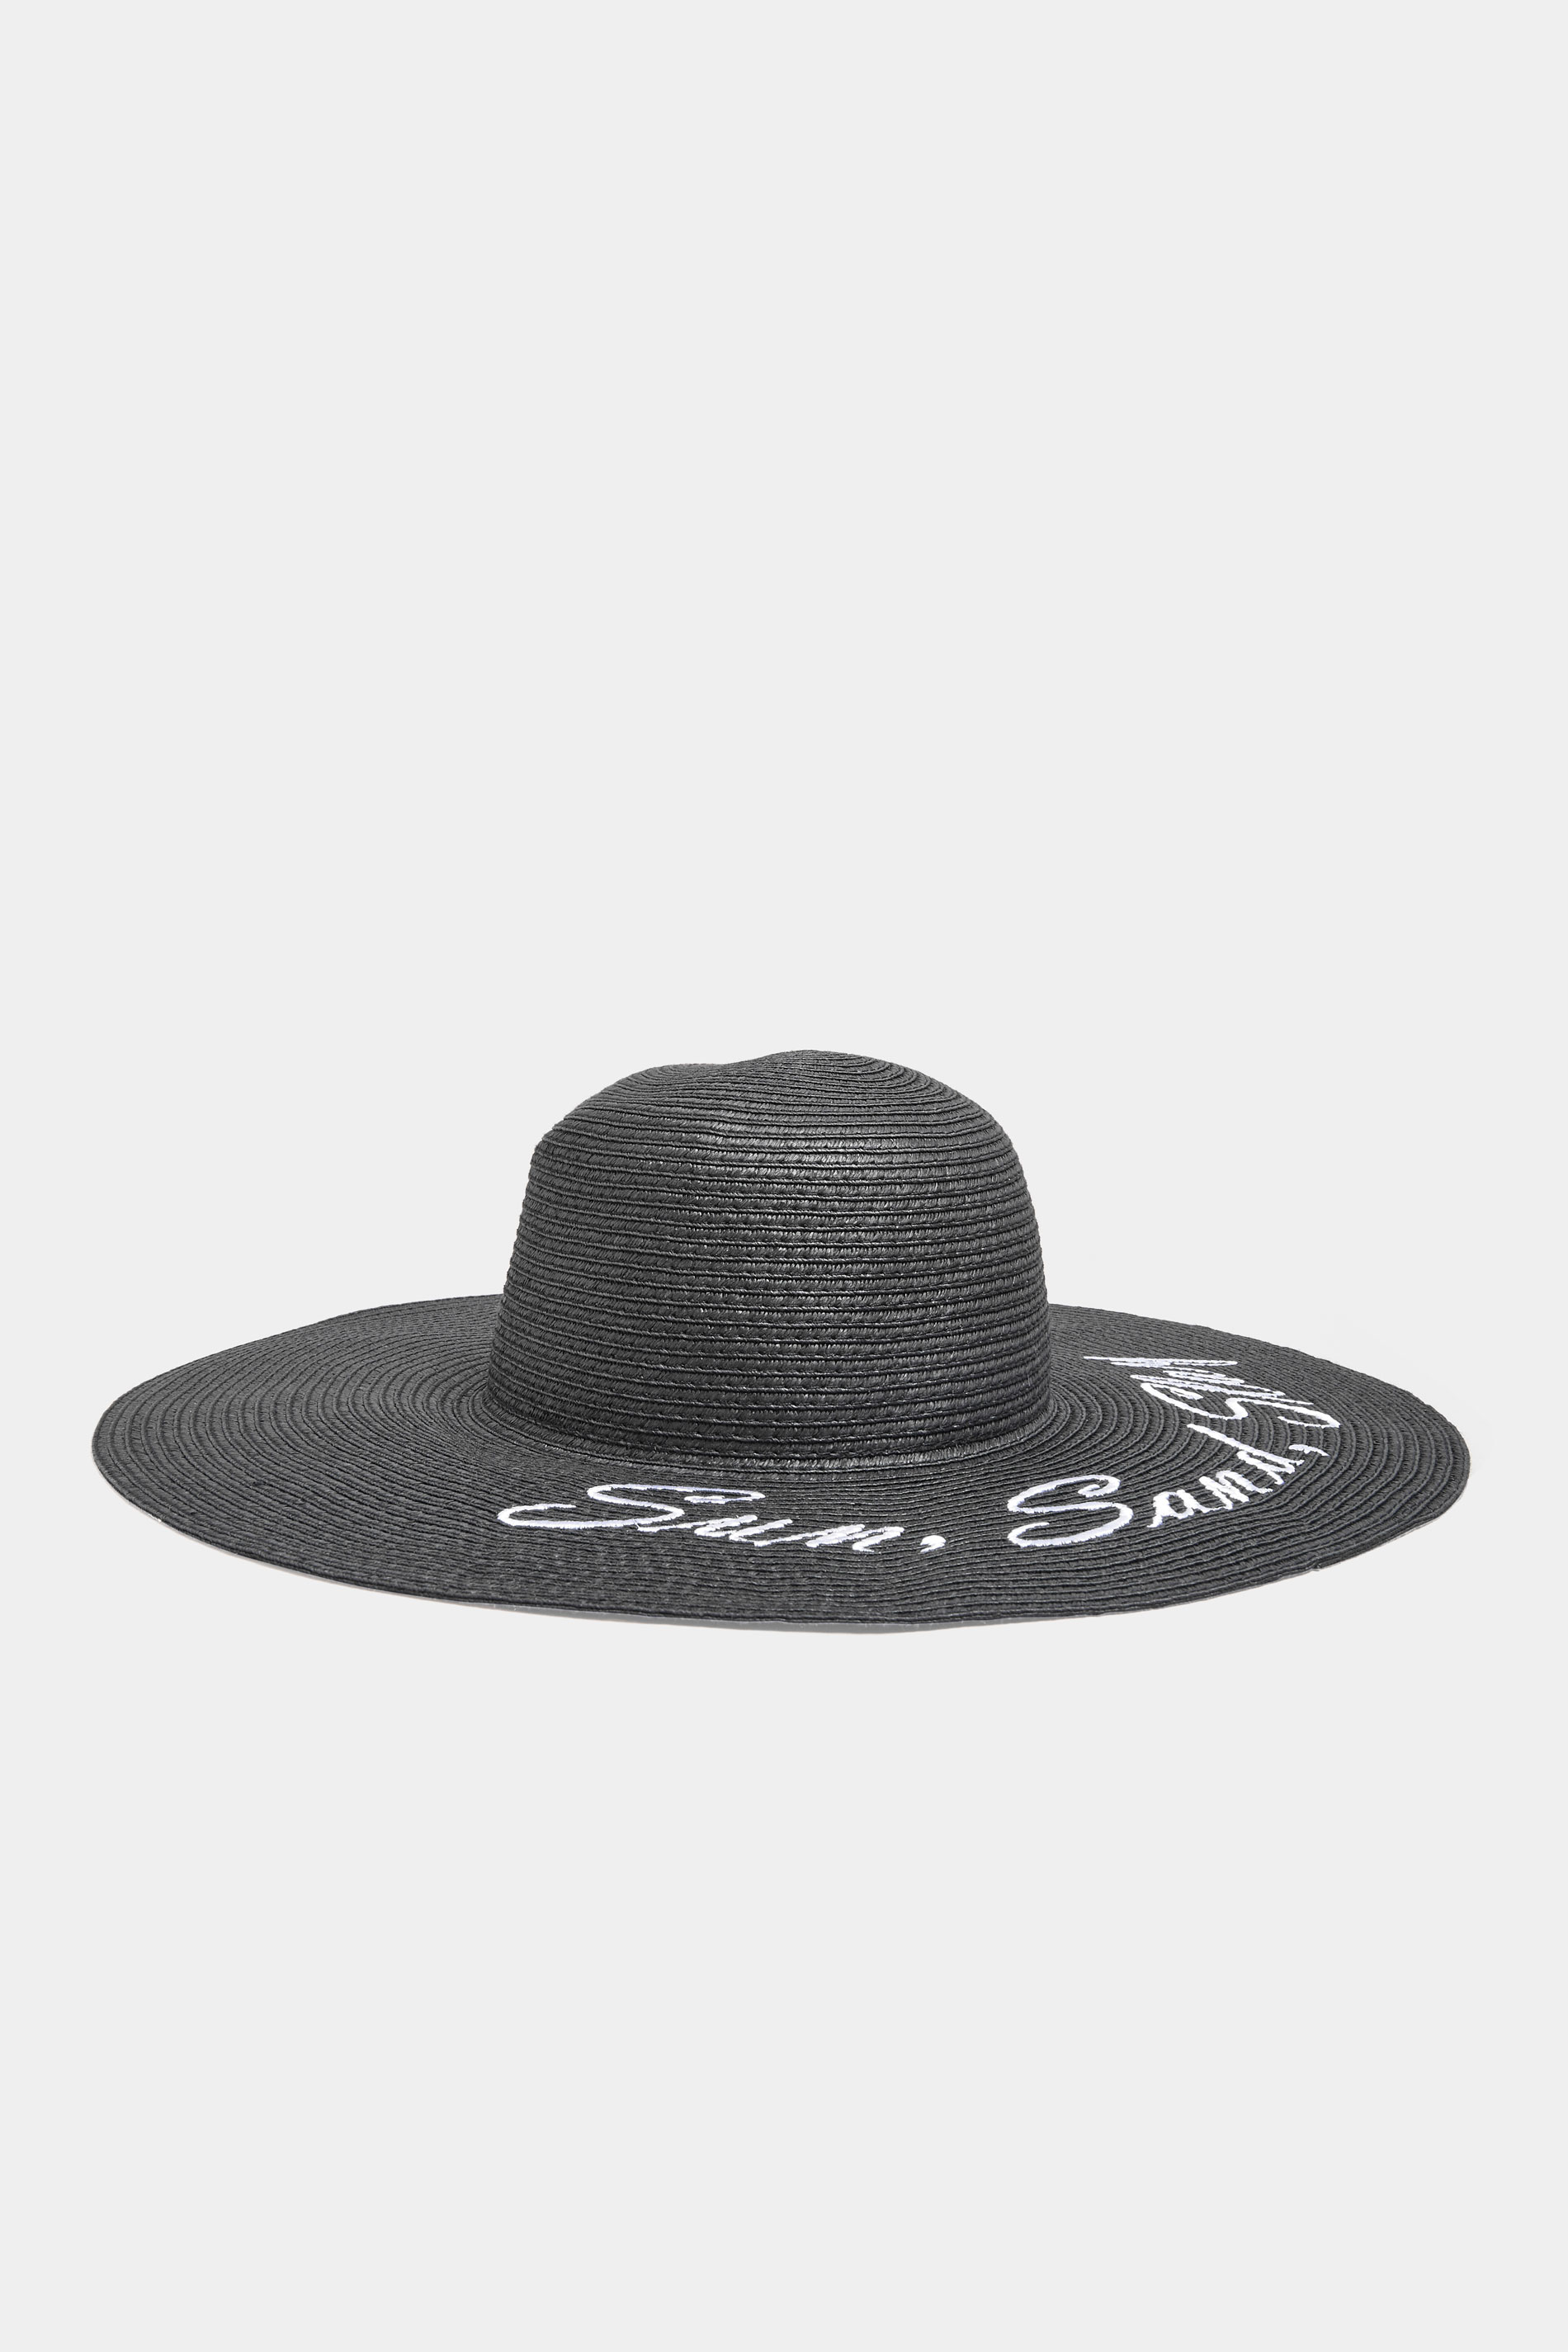 Accessoires Bonnets & Châpeaux | Châpeau de Paille Noir 'Sun, Sand, Slay' - BK24167